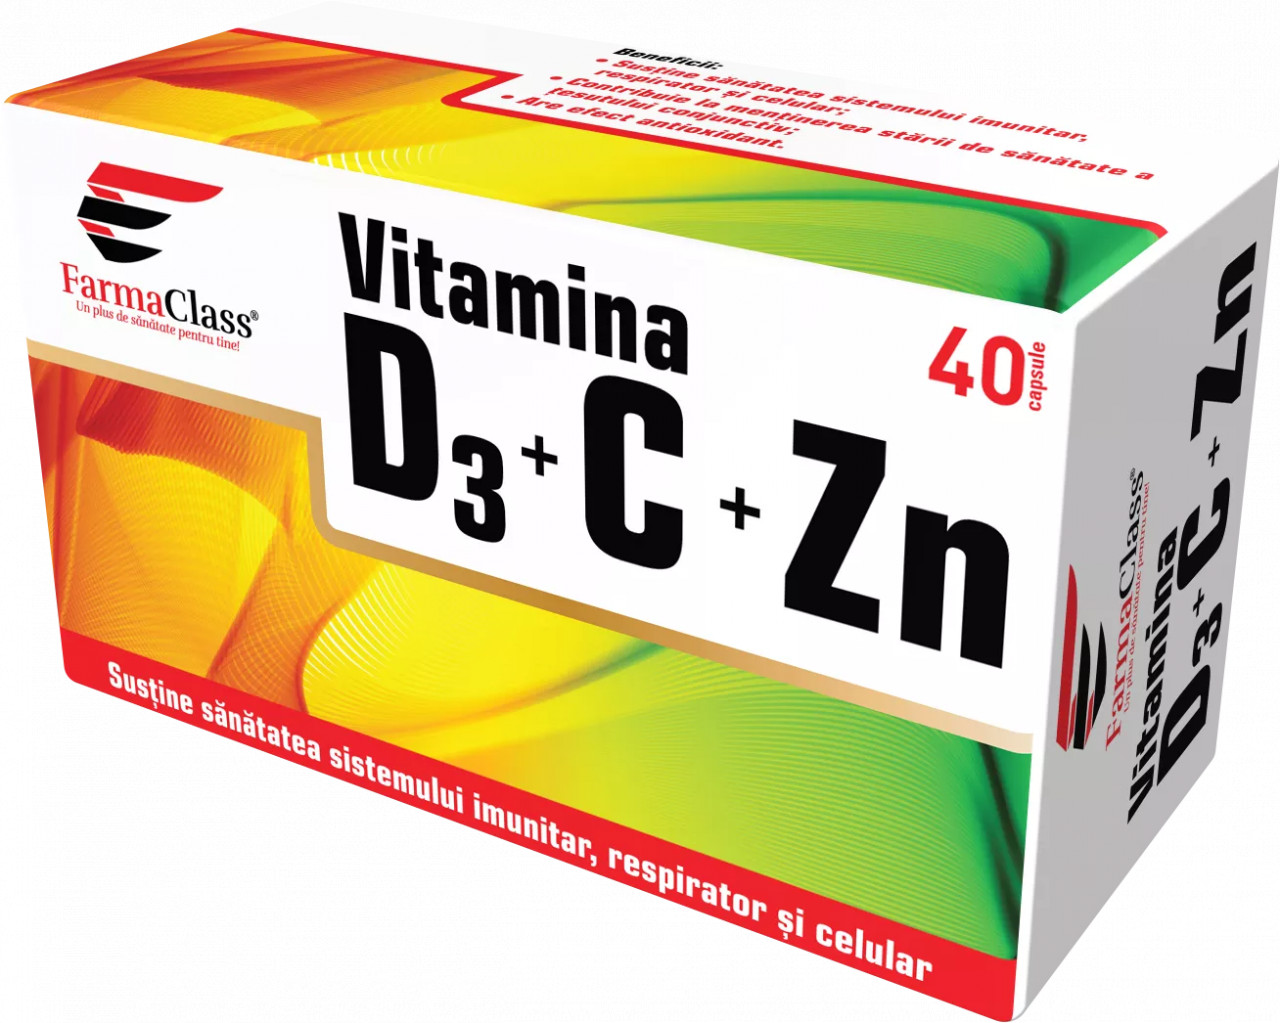 Vitamina D3+C+ZN - 40 cps